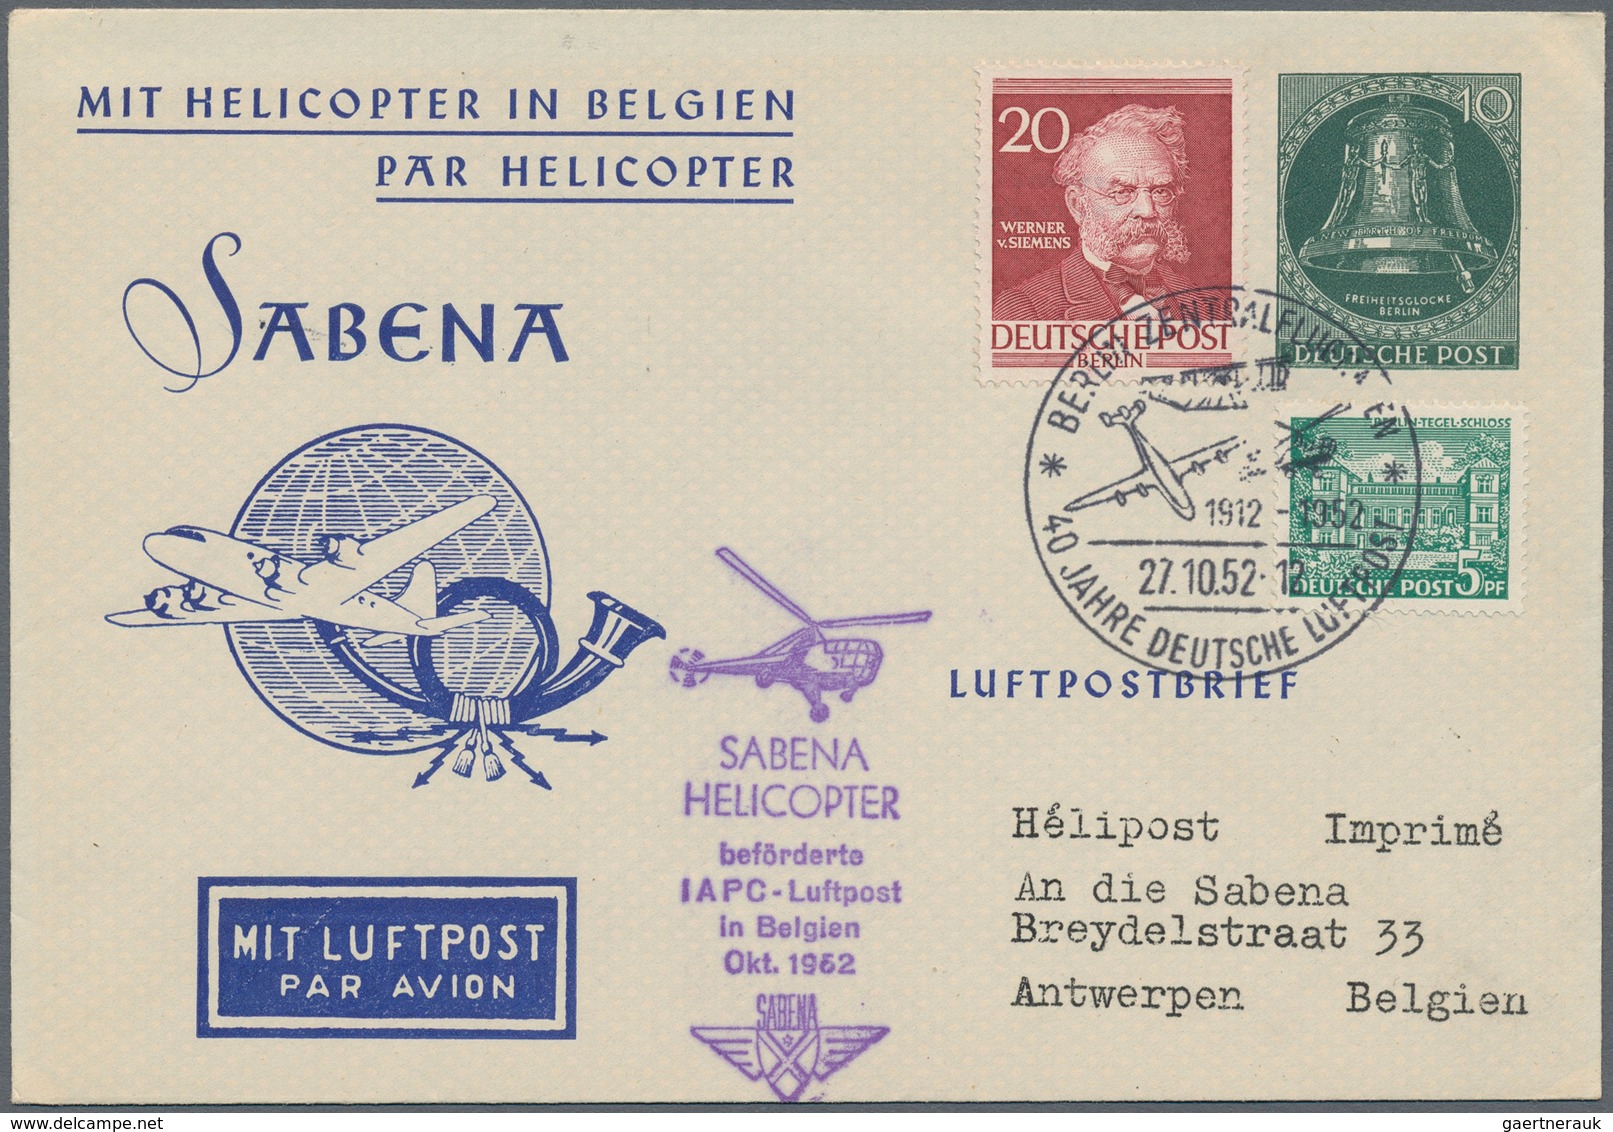 Berlin: 1951 - 1959, Posten von über 50 Privat-Ganzsachenkarten mit der Ausgabe Glocke, Klöppel link